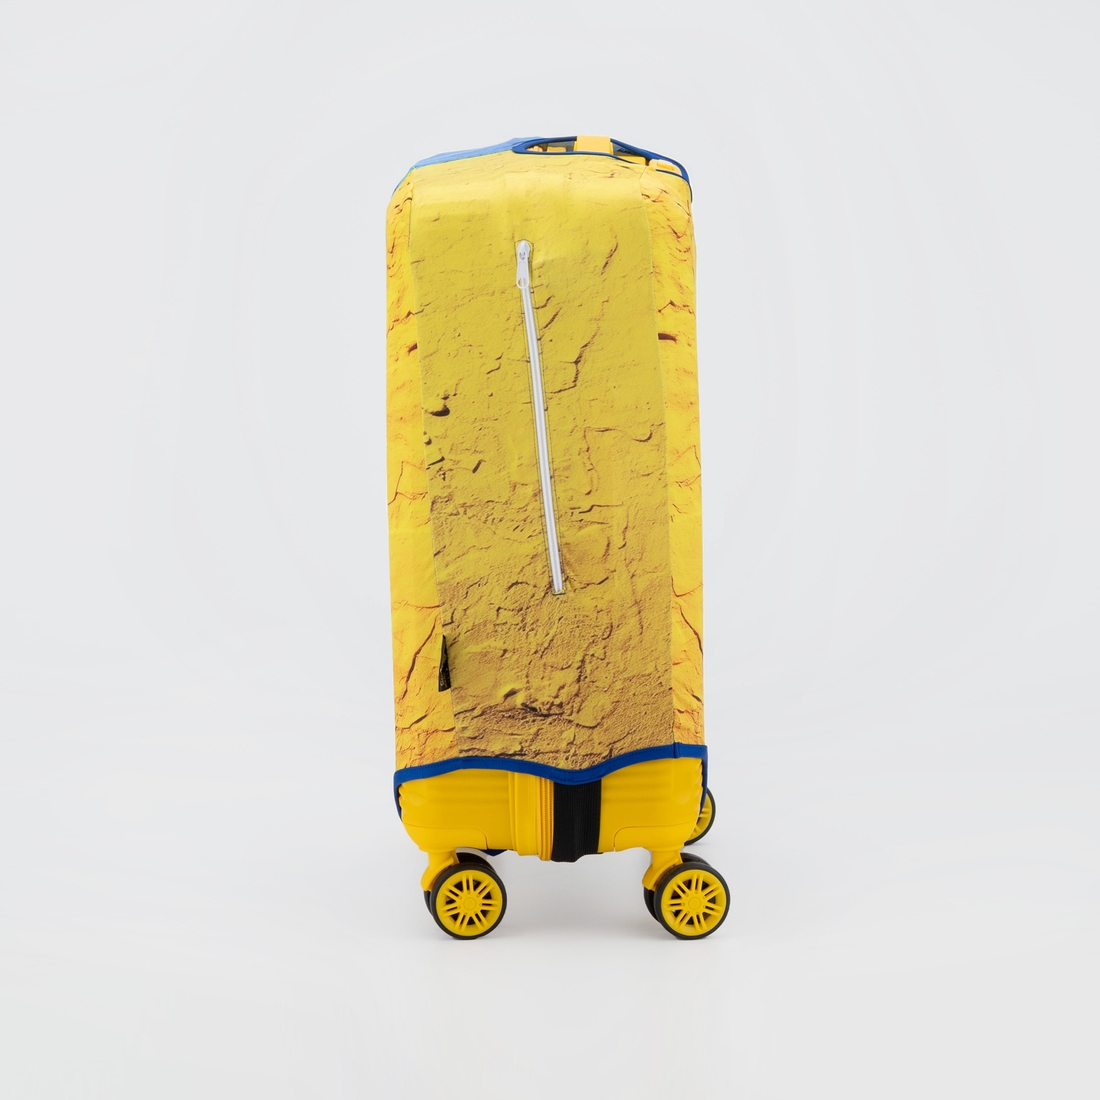 Фото Чохол для валізи Coverbag Pantone L Жовто- блакитний (2000989904014A)